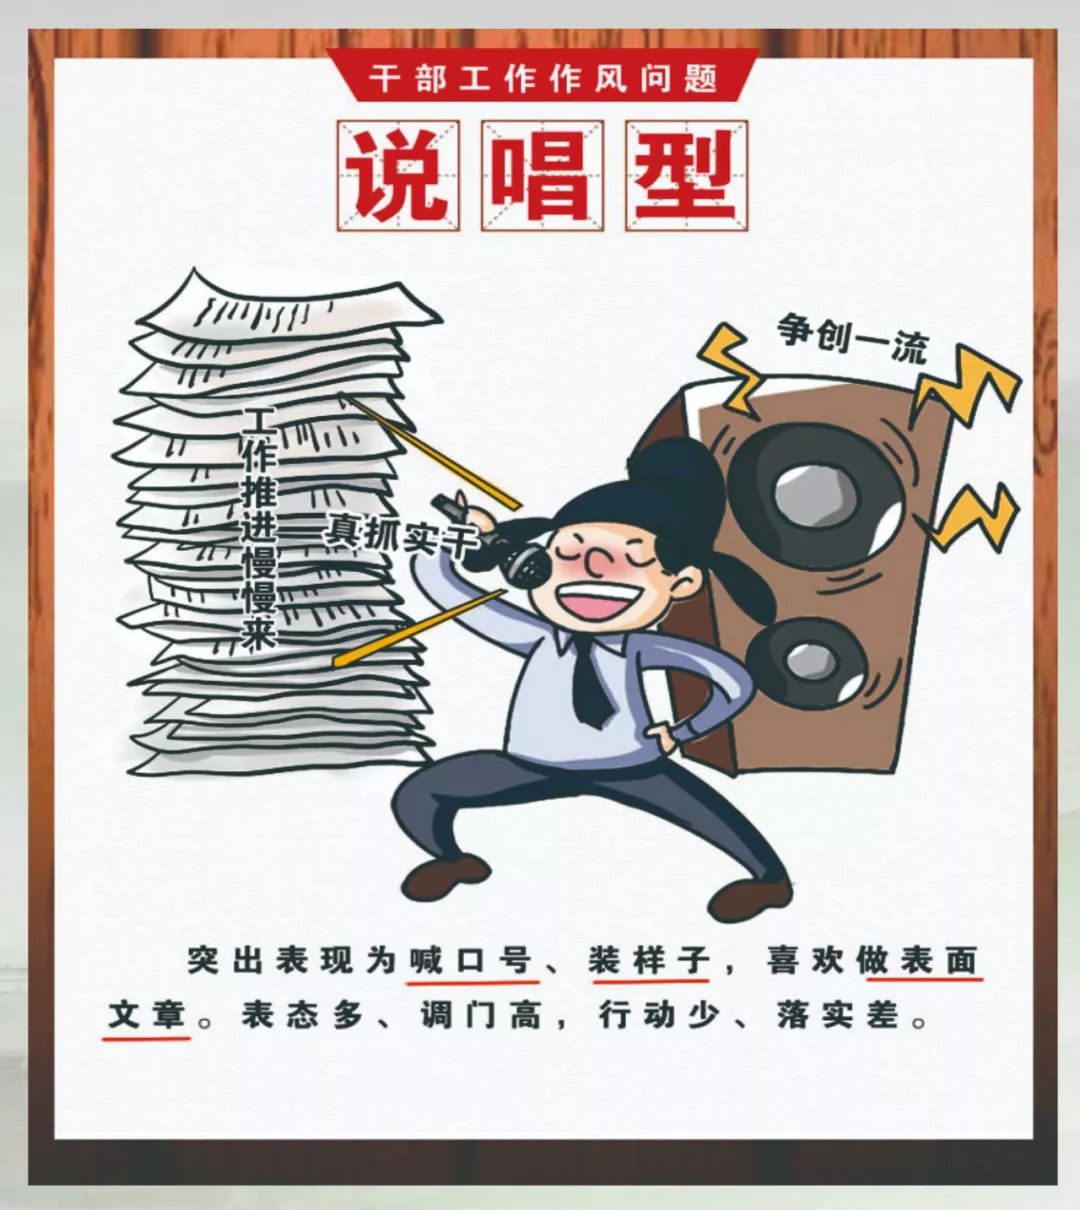 【廉政广角】"我来画 你来学"漫画说纪:形式主义,官僚